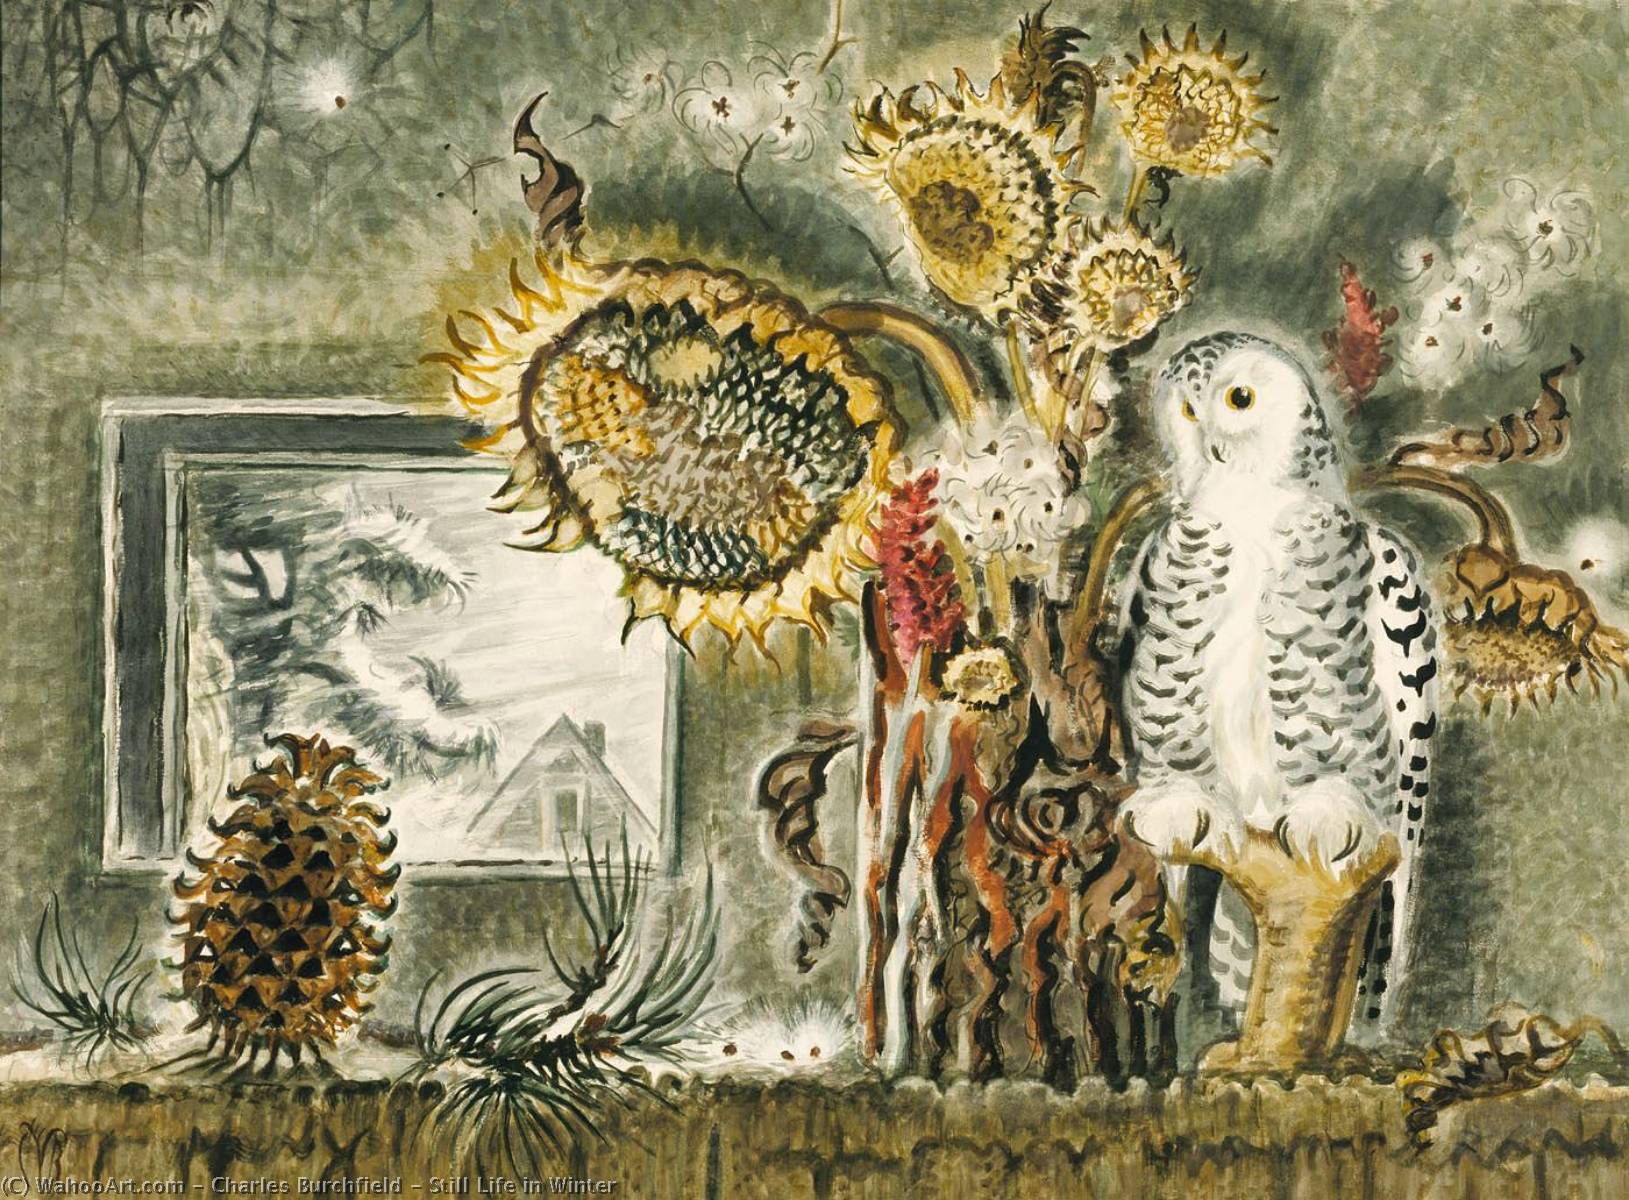 WikiOO.org - Εγκυκλοπαίδεια Καλών Τεχνών - Ζωγραφική, έργα τέχνης Charles Ephraim Burchfield - Still Life in Winter